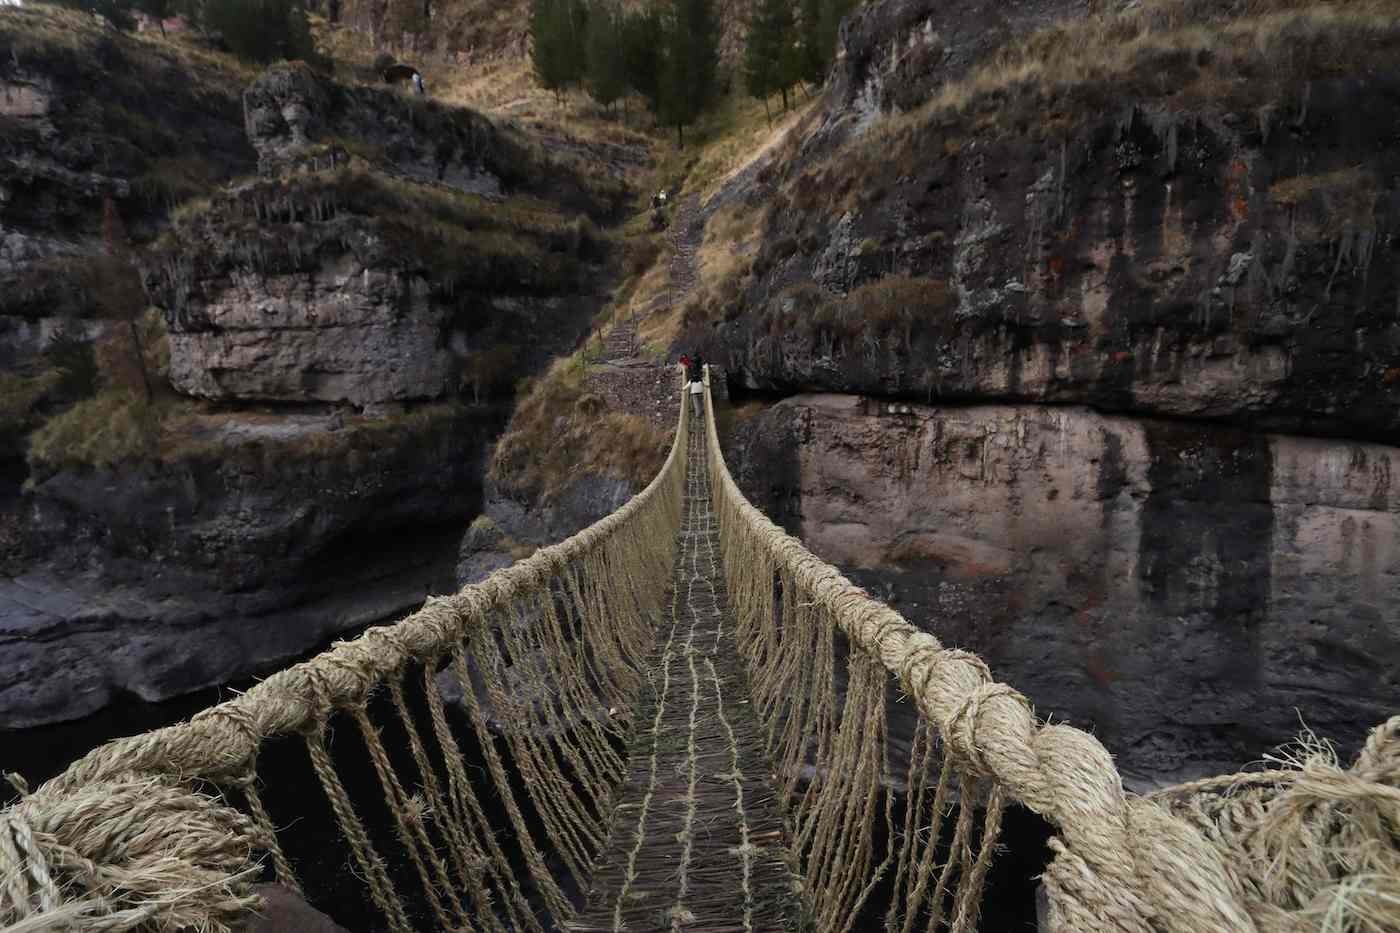 Medieval Crueldad Habitual Q'eswachak, el último puente colgante inca en Perú | Bidaiak | GAIAK